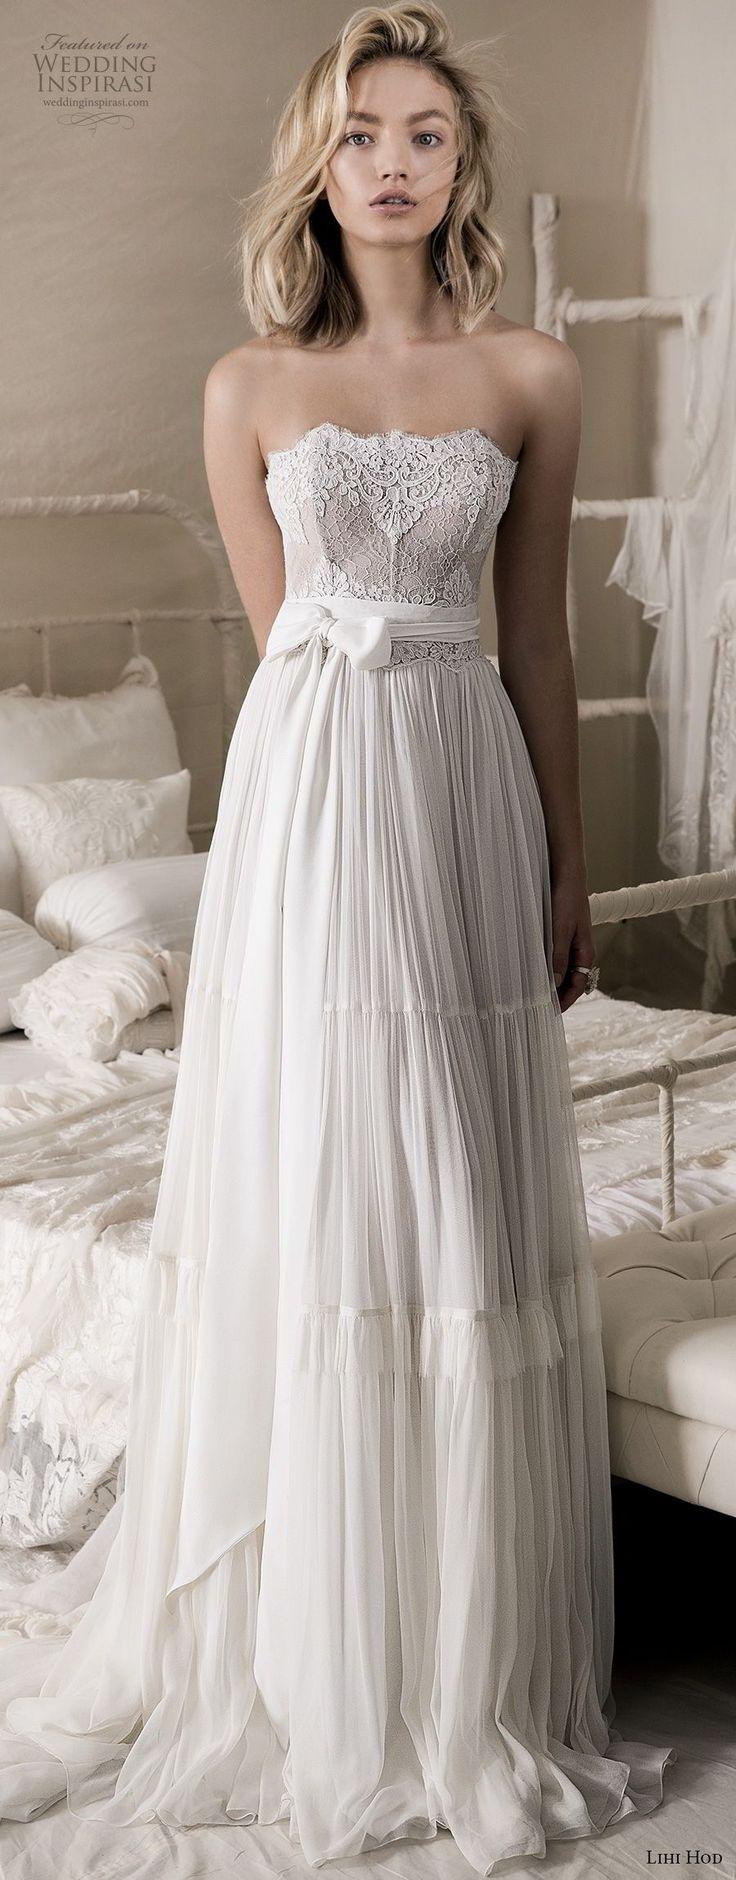 زفاف - Lihi Hod 2018 Wedding Dresses — “A Whiter Shade Of Pale” Bridal Collection